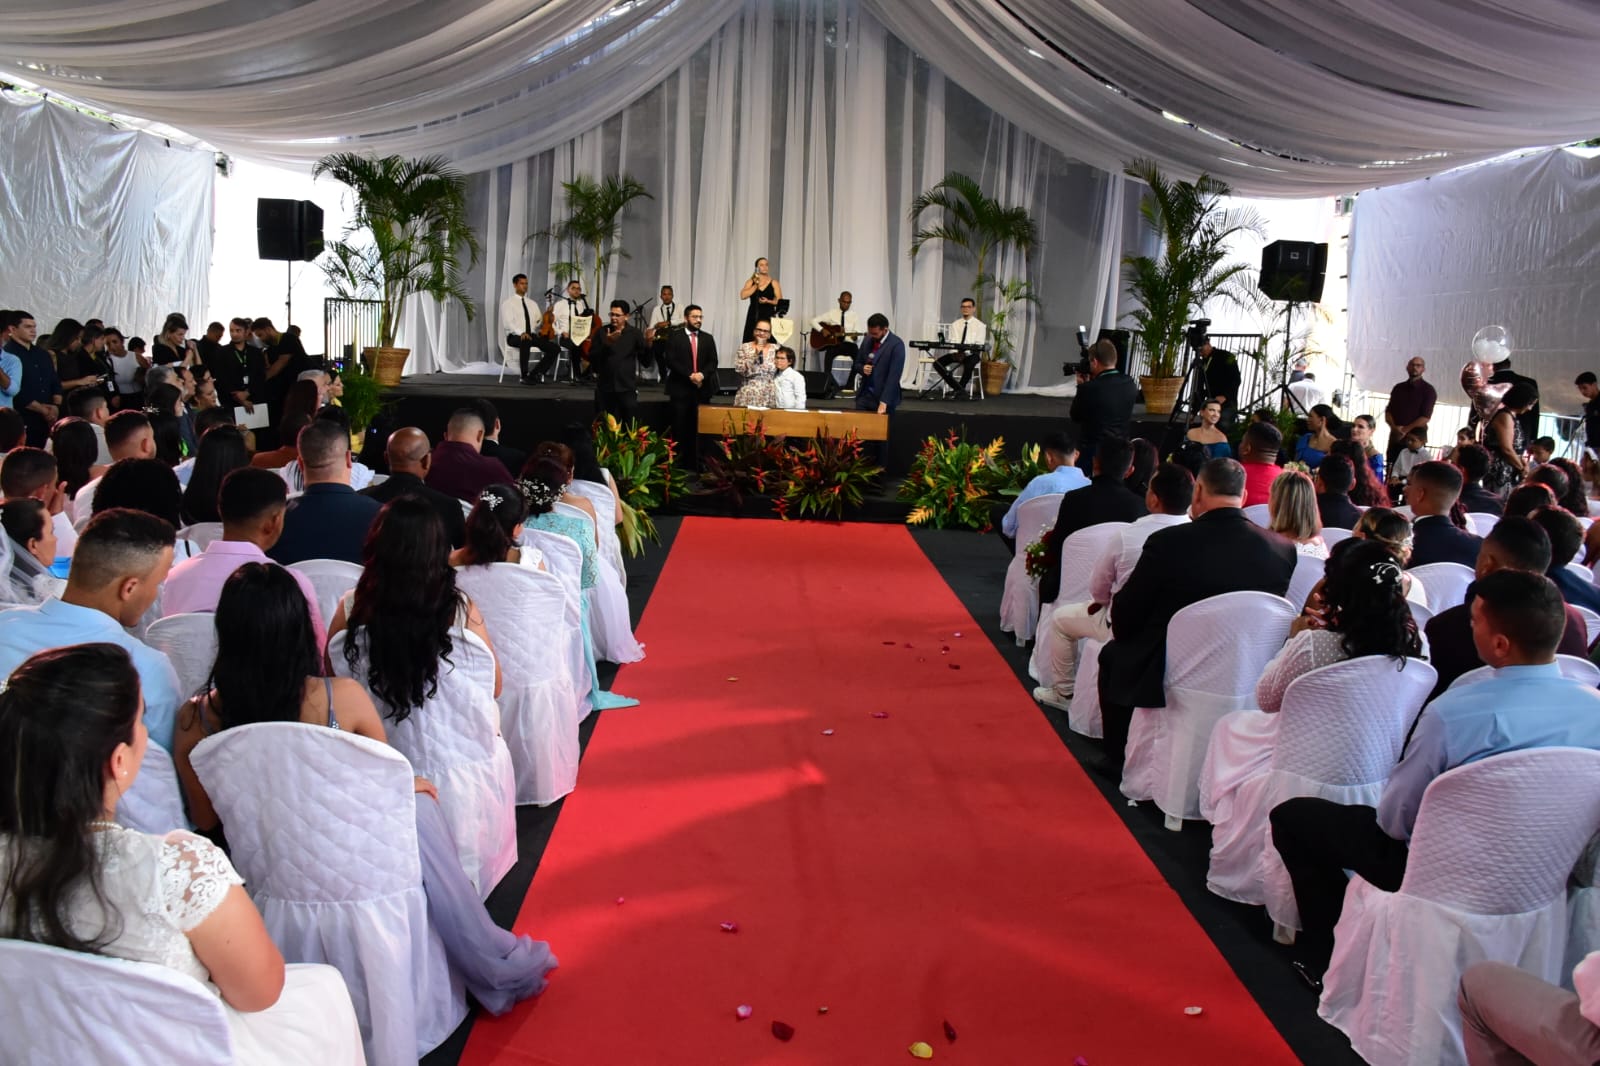  foto colorida mostra o palco da tenda onde está sendo realizada a cerimônia. Frente a ele está a juíza Graciete Sotto Mayor, posicionada em pé, atrás de uma mesa, falando ao microfone. Frente a ela está o público da plateia e um tapete vermelho.